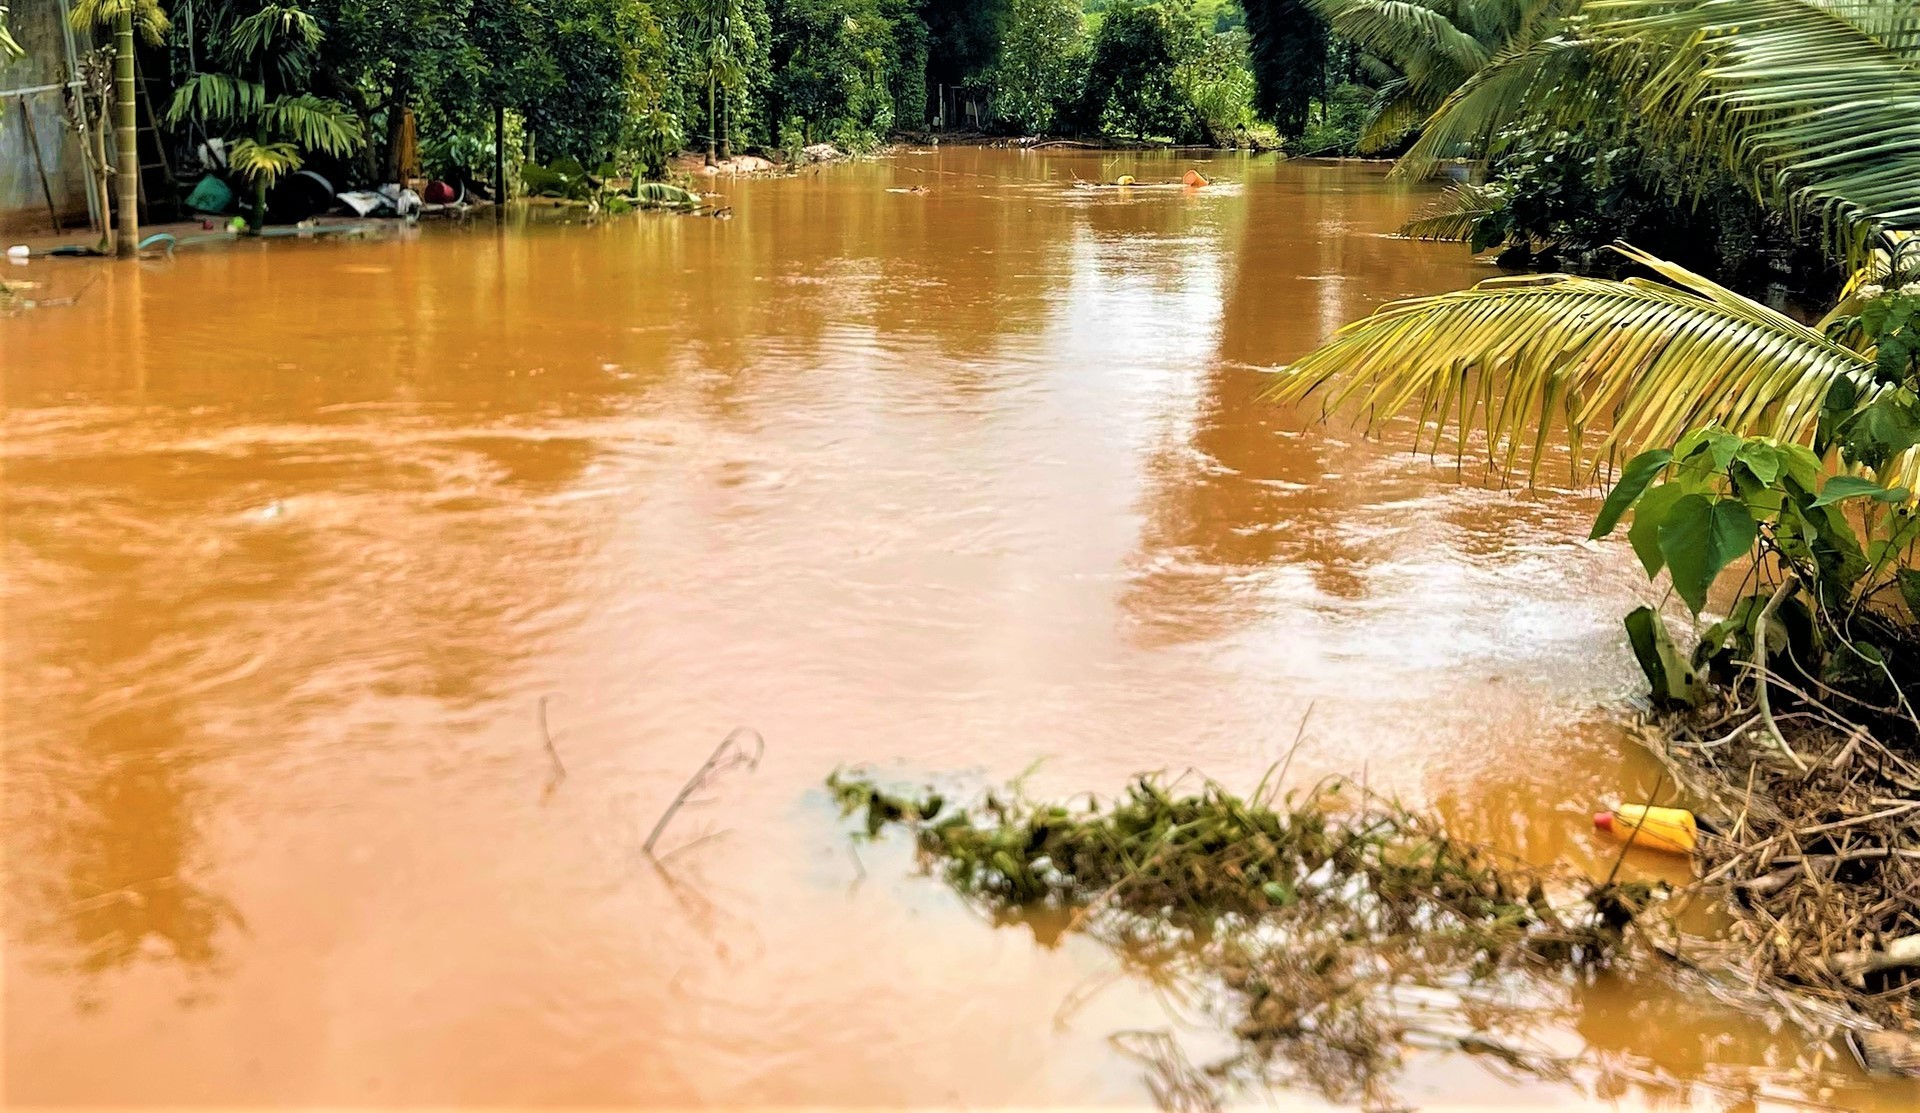 Vỡ hồ chứa nước ở Đắk Nông gây thiệt hại hơn nửa tỷ đồng - Ảnh 5.